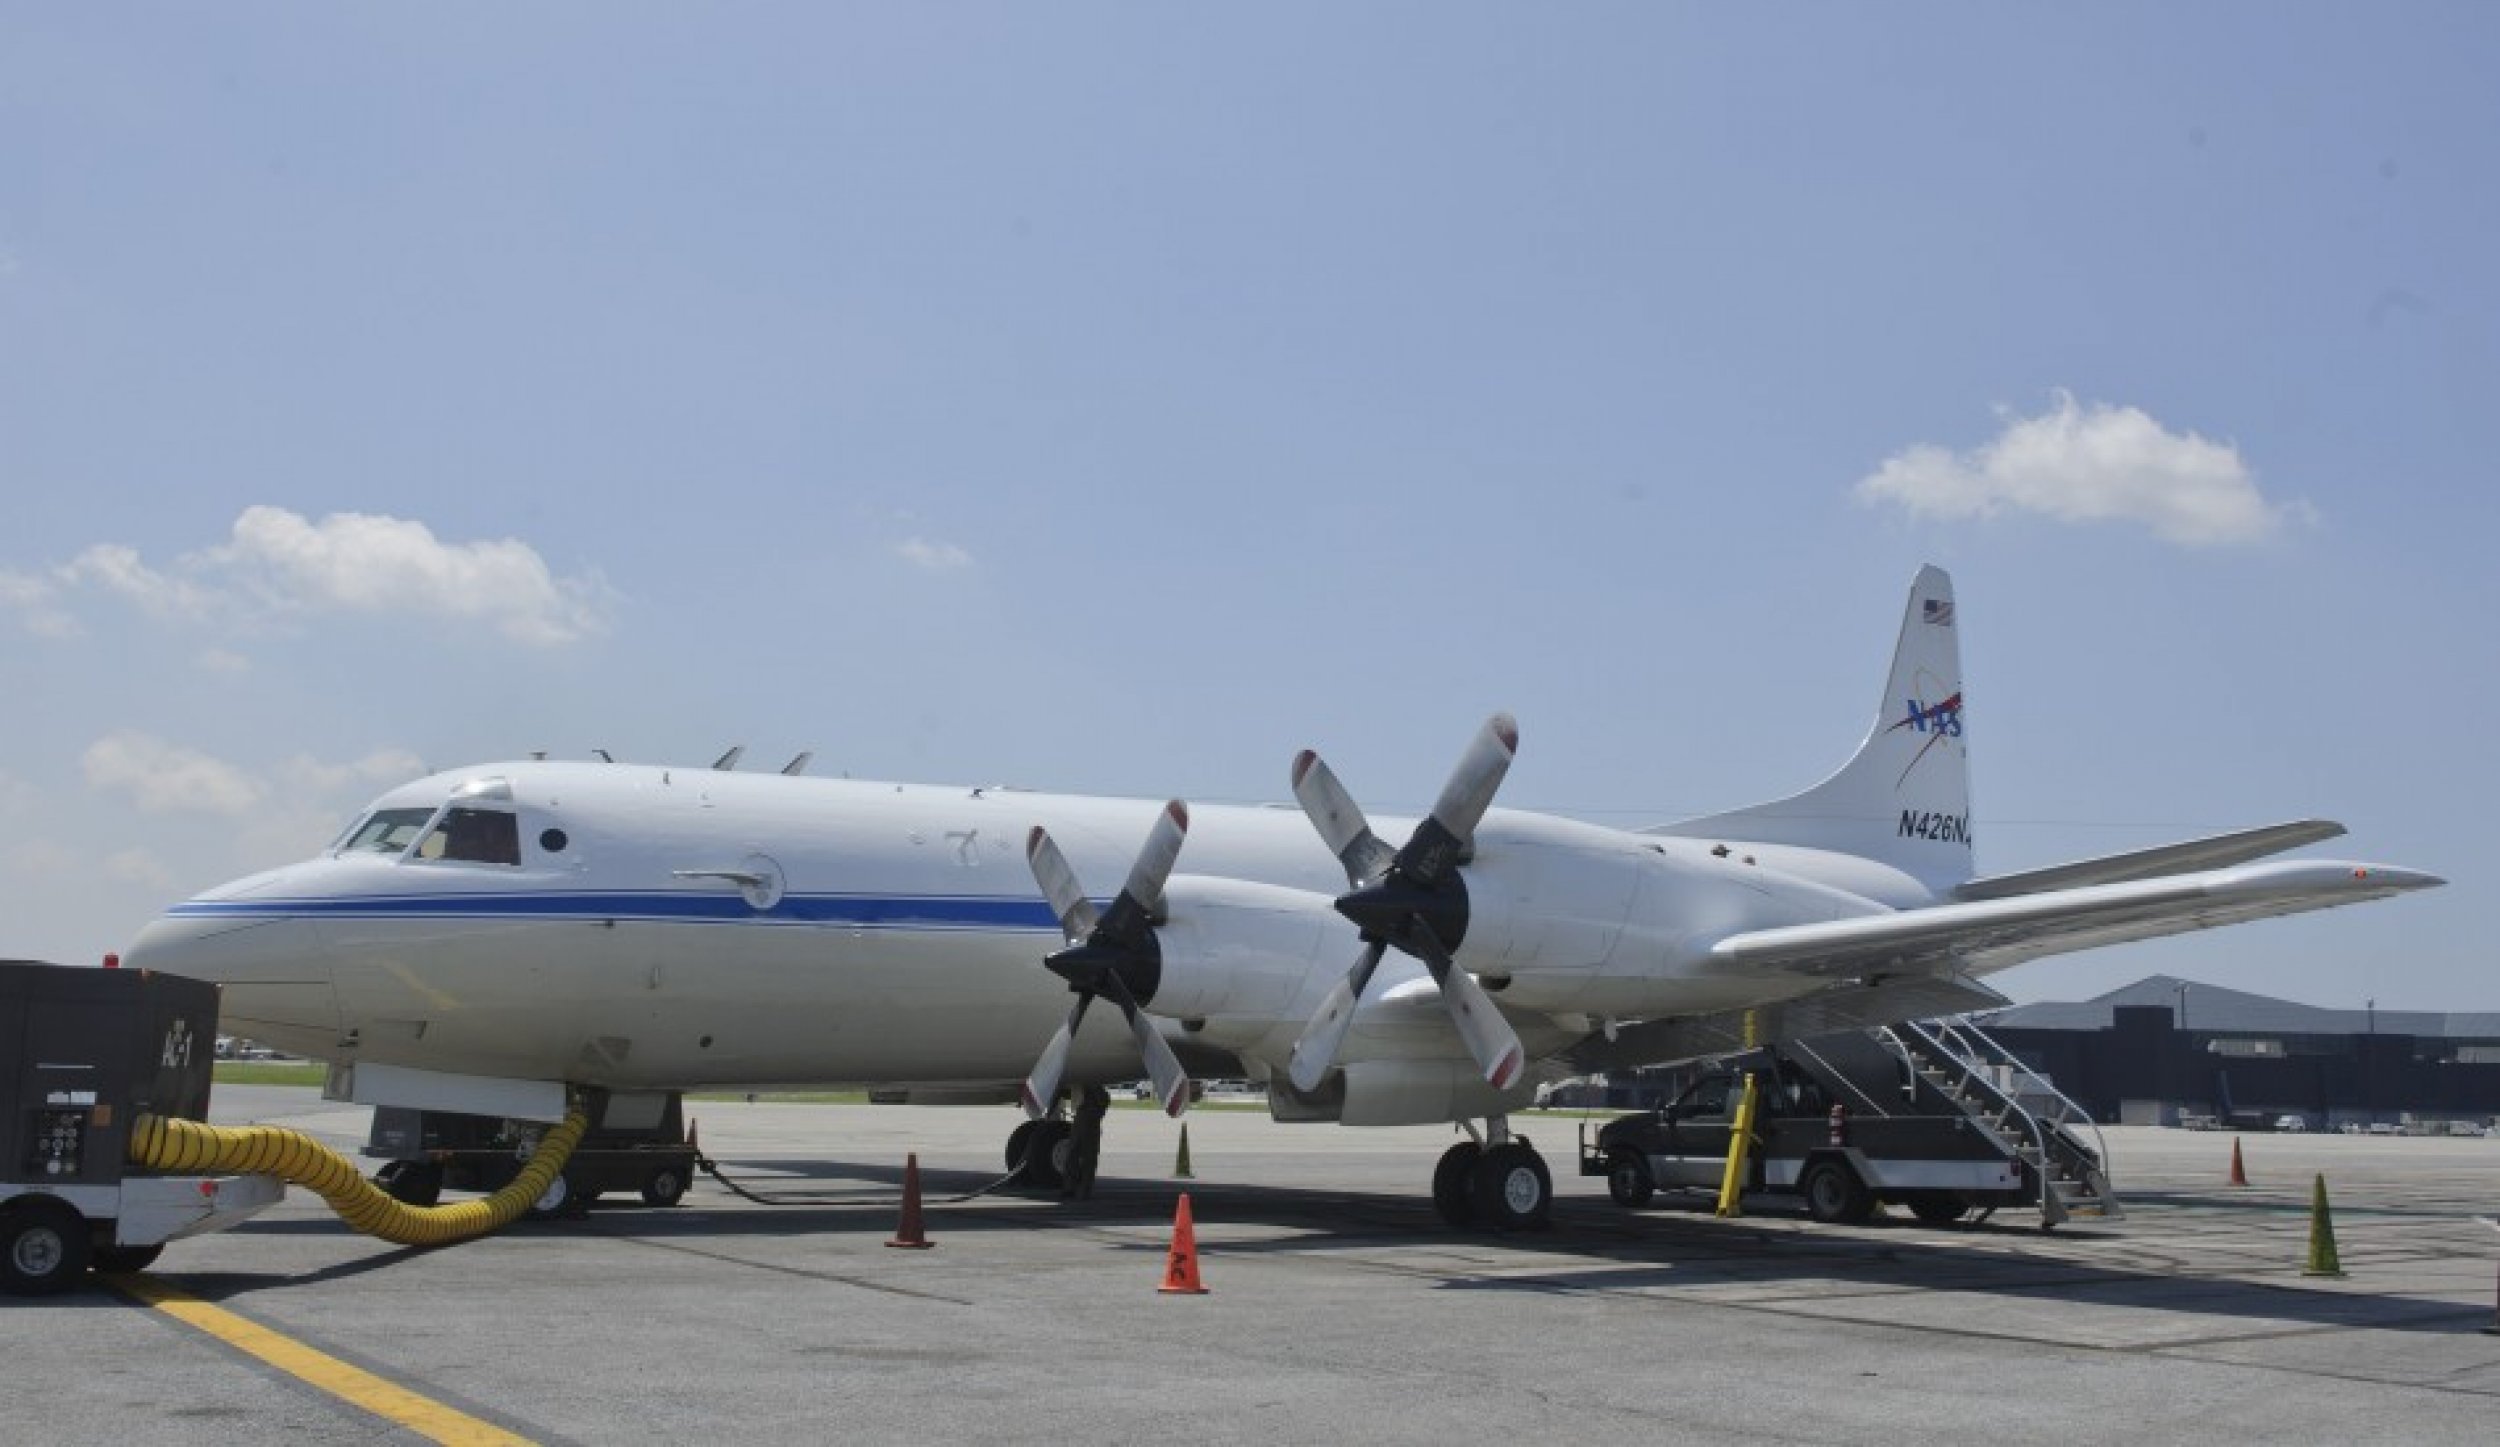 P-3B NASA research aircraft